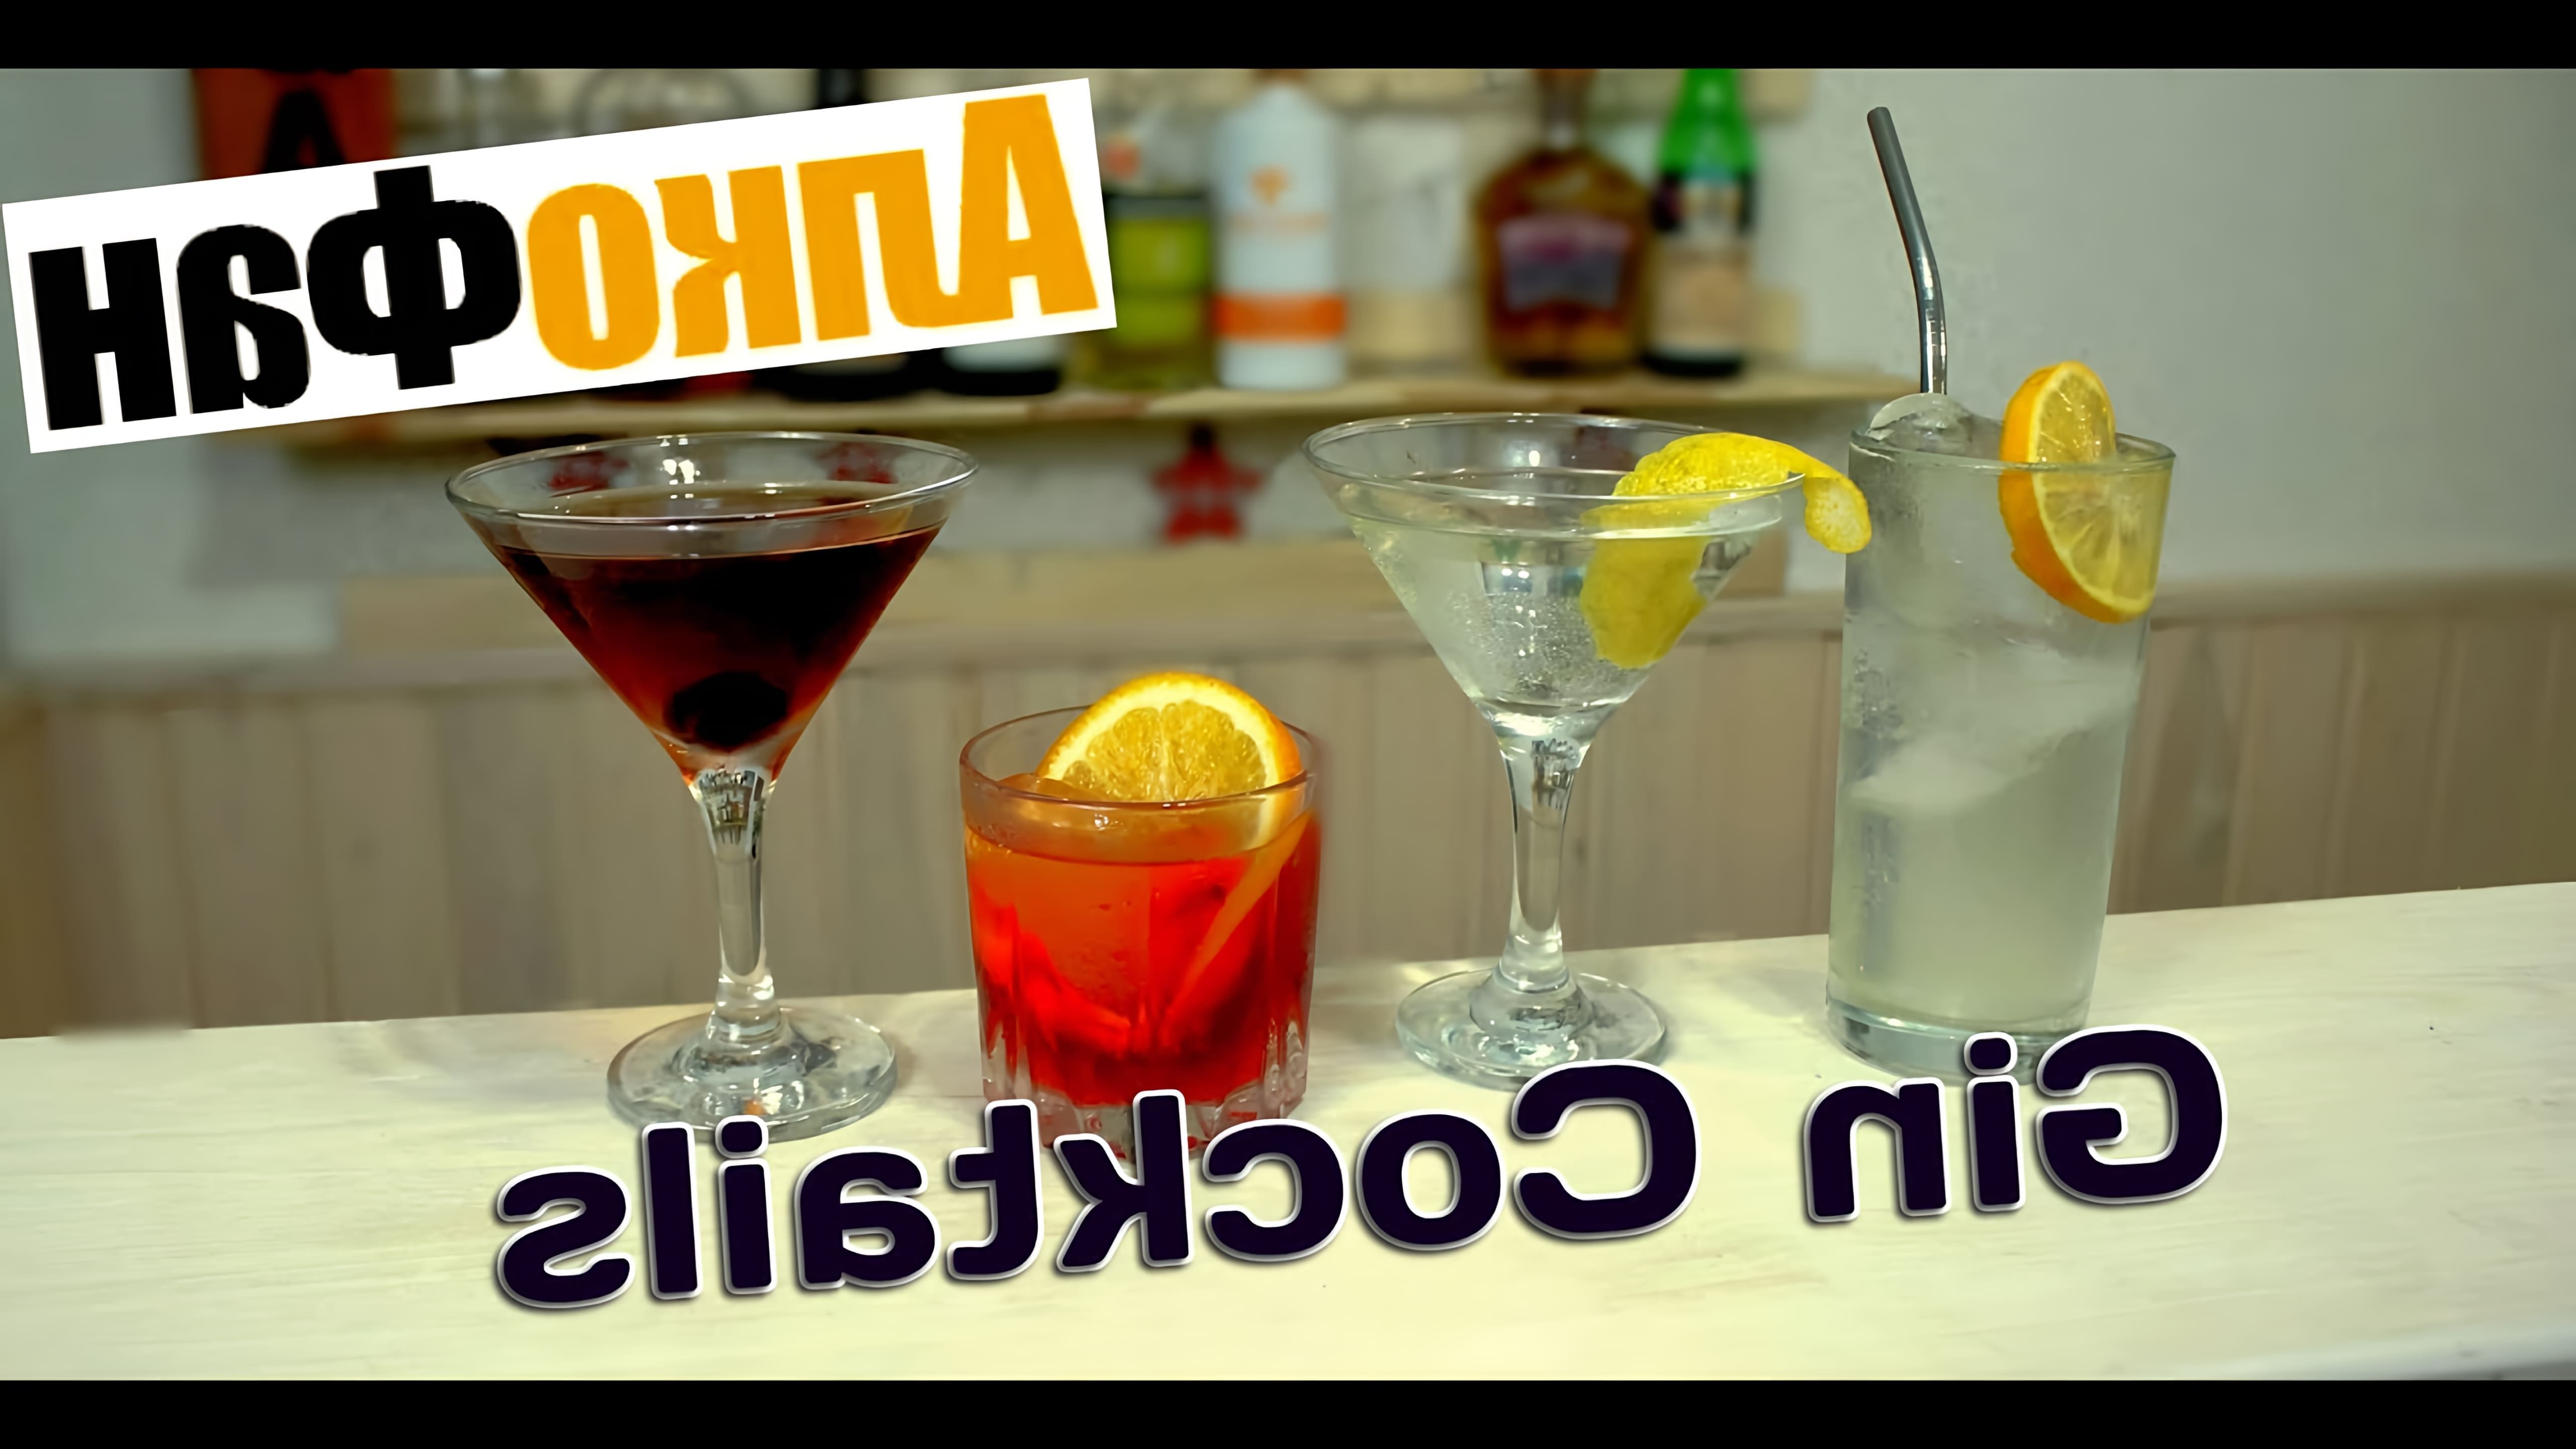 В этом видео Дмитрий показывает, как приготовить четыре простых коктейля на основе джина